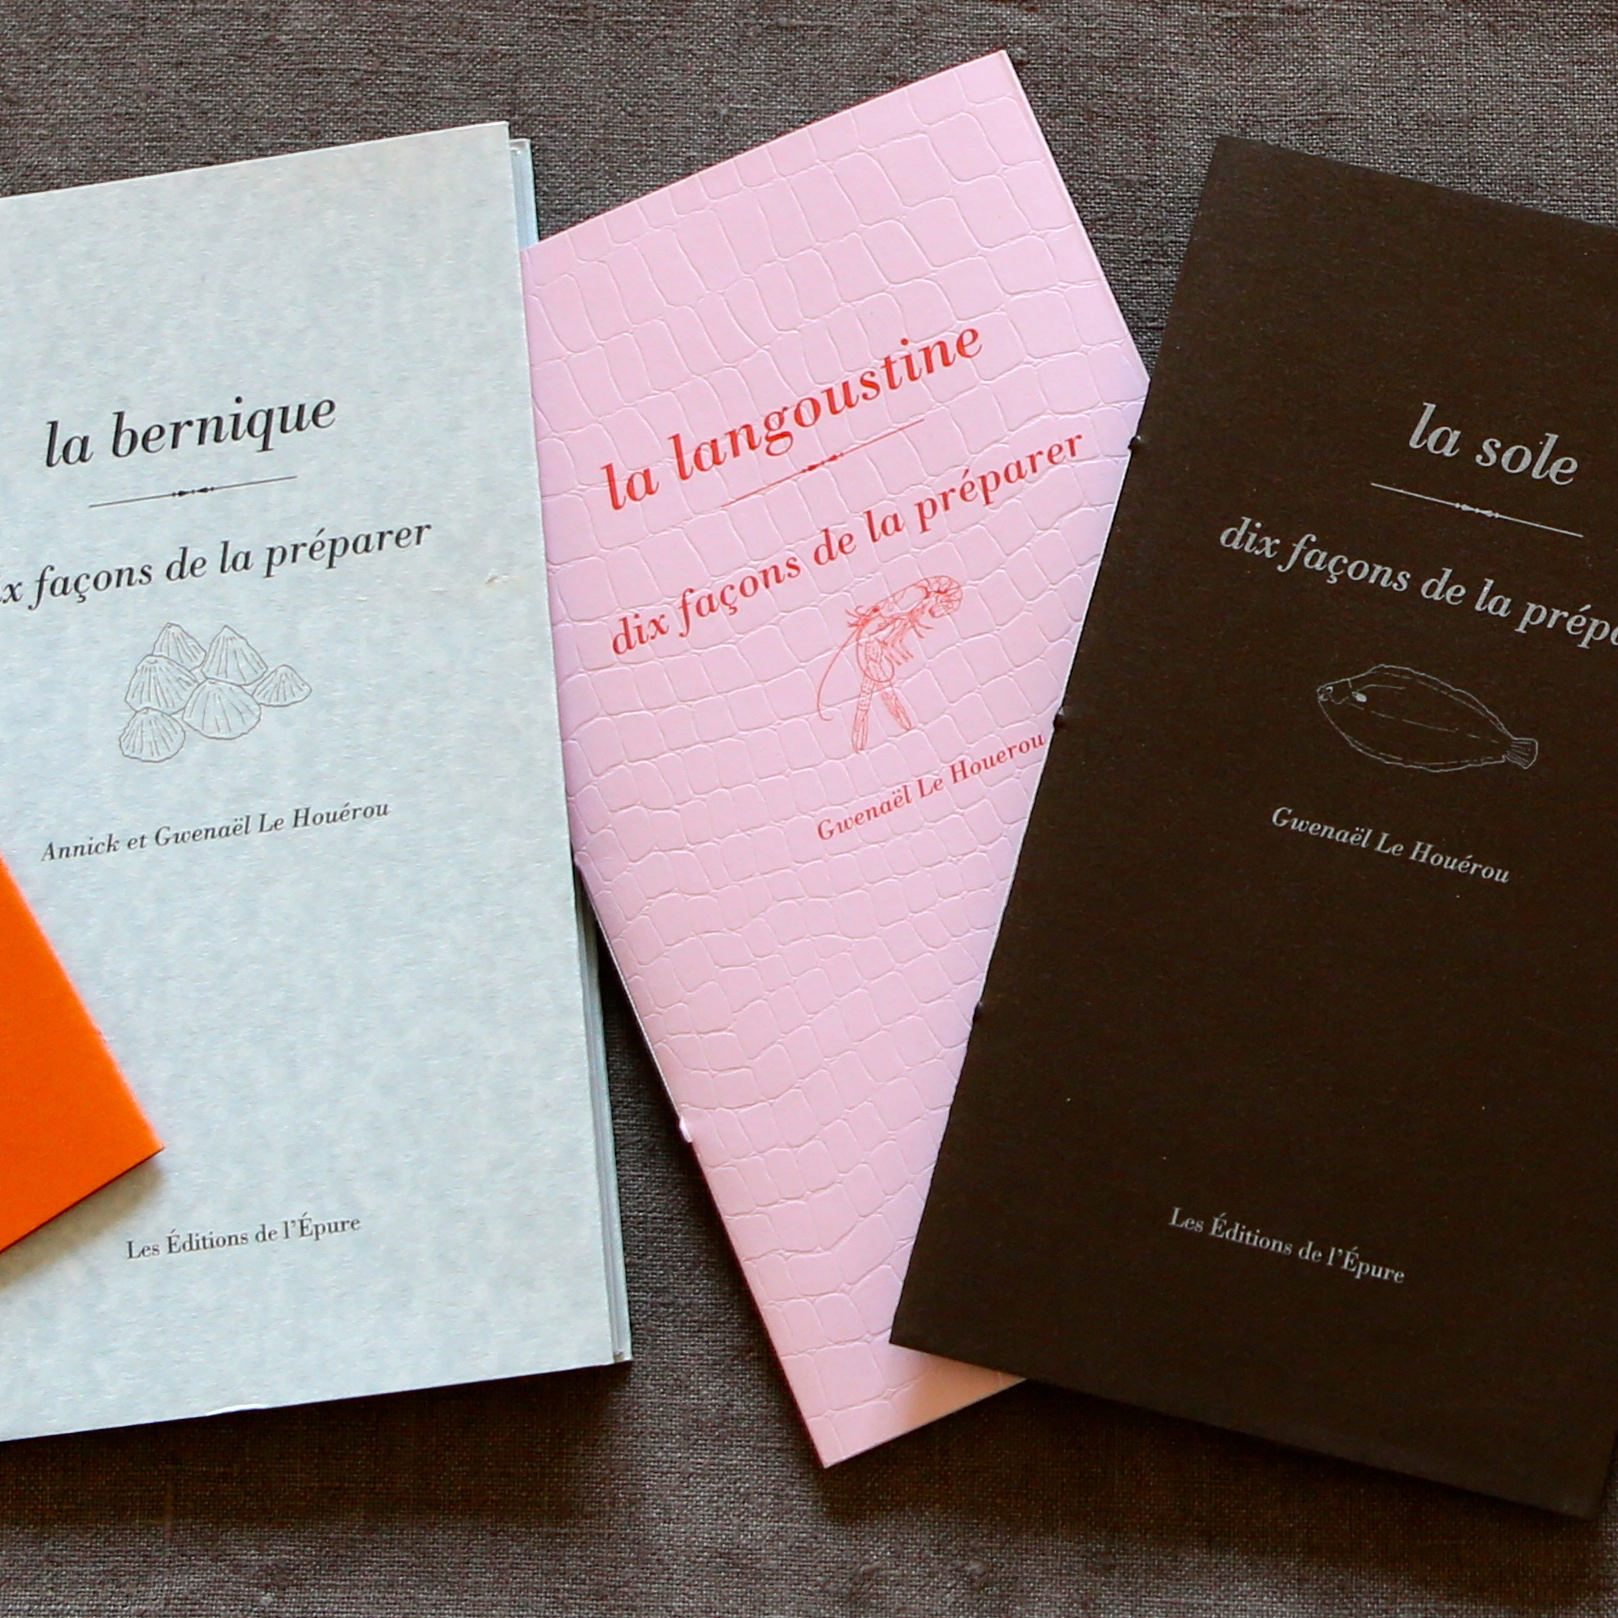 Dix façons de préparer, Les Éditions de l'Épure, 120 x 215 mm, 24 pages